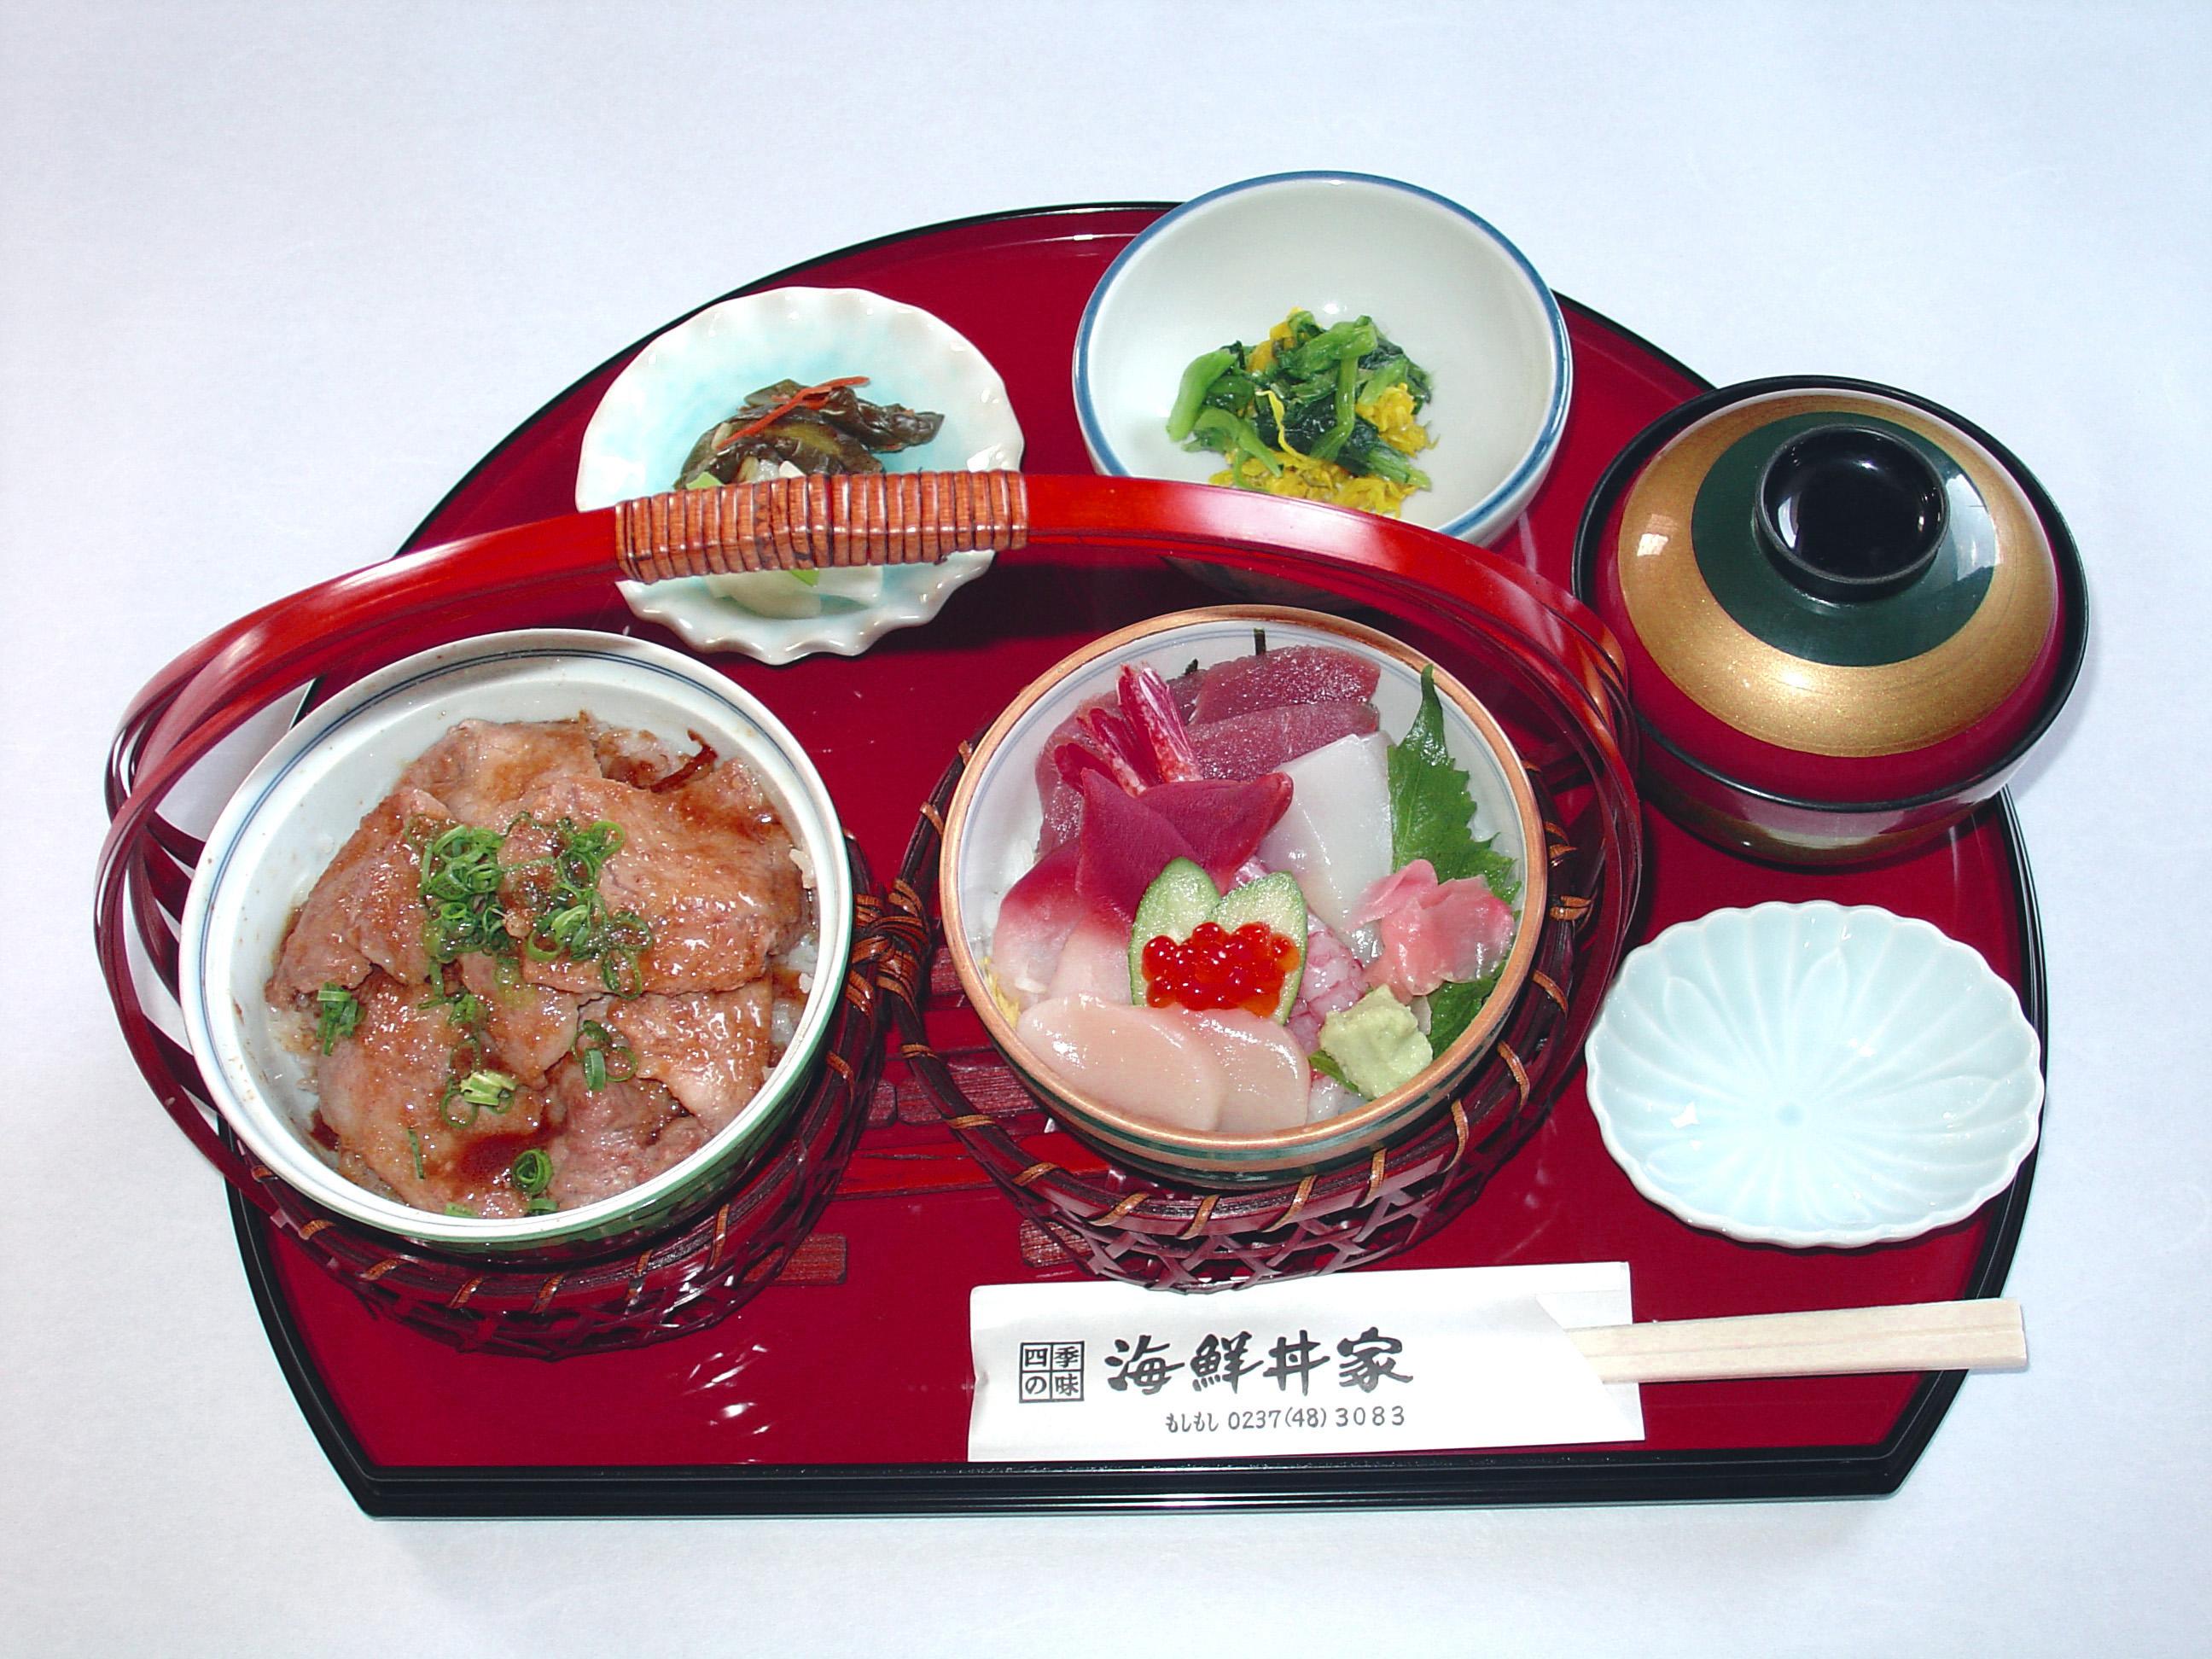 四季の味 海鮮丼家 平日限定ランチ600円 各種ご宴会承ります 樽生店 サントリーグルメガイド